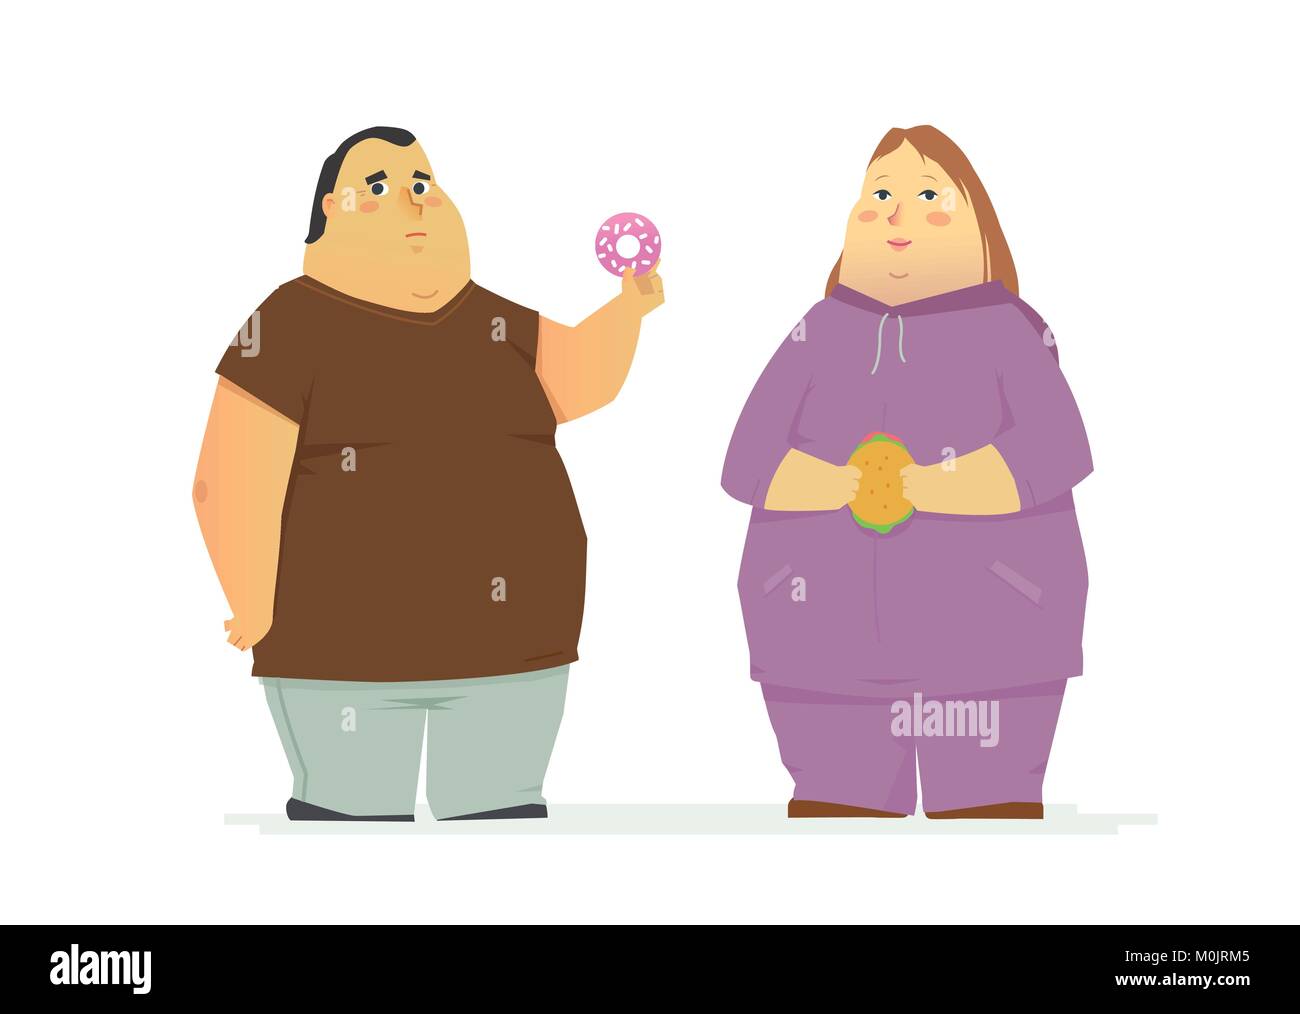 Pralle paar Essen ungesundes Essen - cartoon Menschen Zeichen isoliert Abbildung Stock Vektor